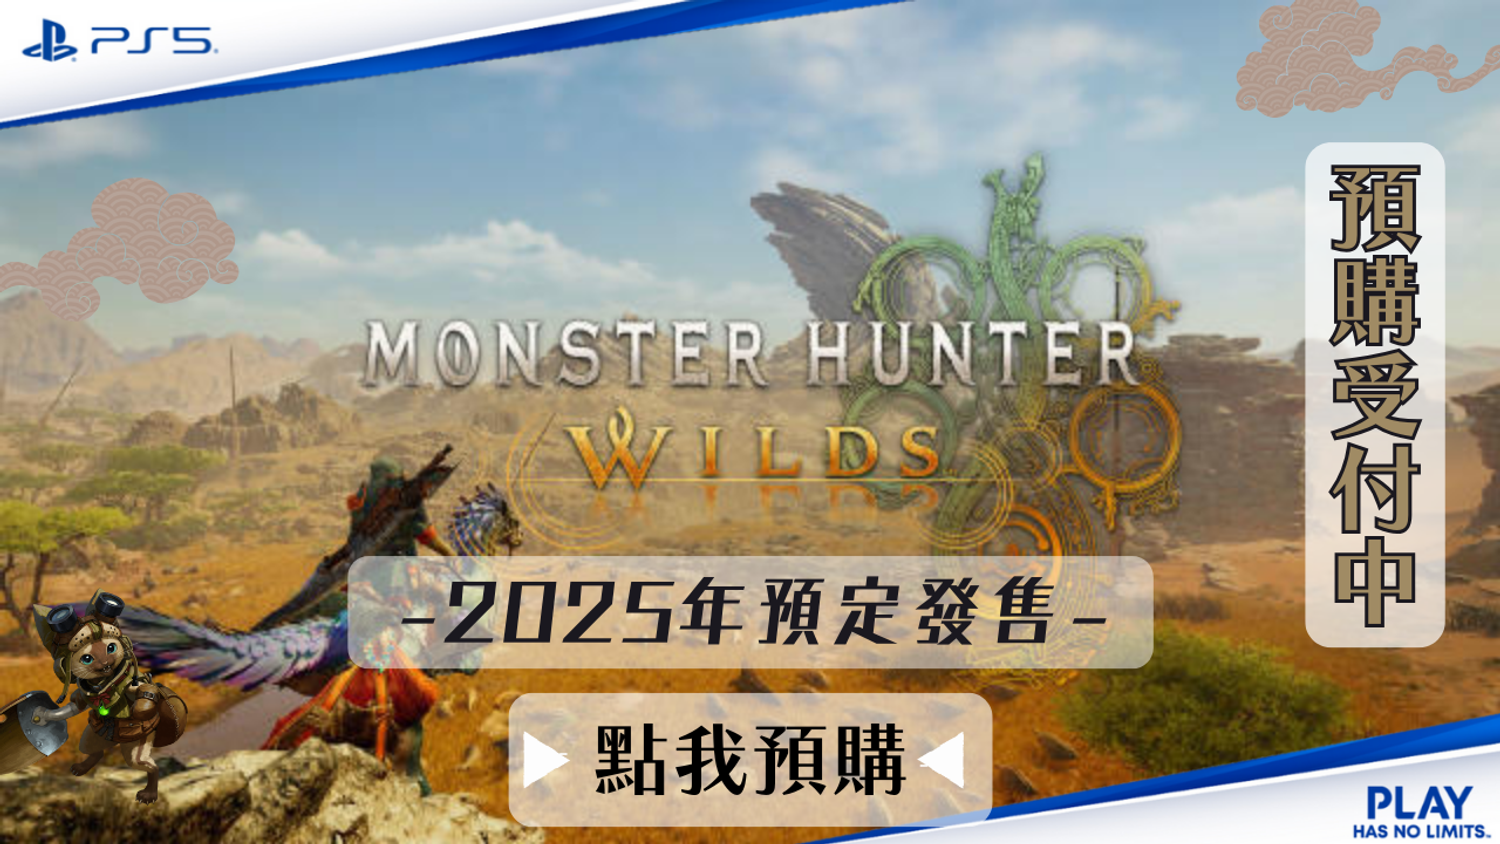 勁多野 三重店 - PS5《魔物獵人 荒野 》Monster Hunter Wilds 中文一般版 2025年預定發售